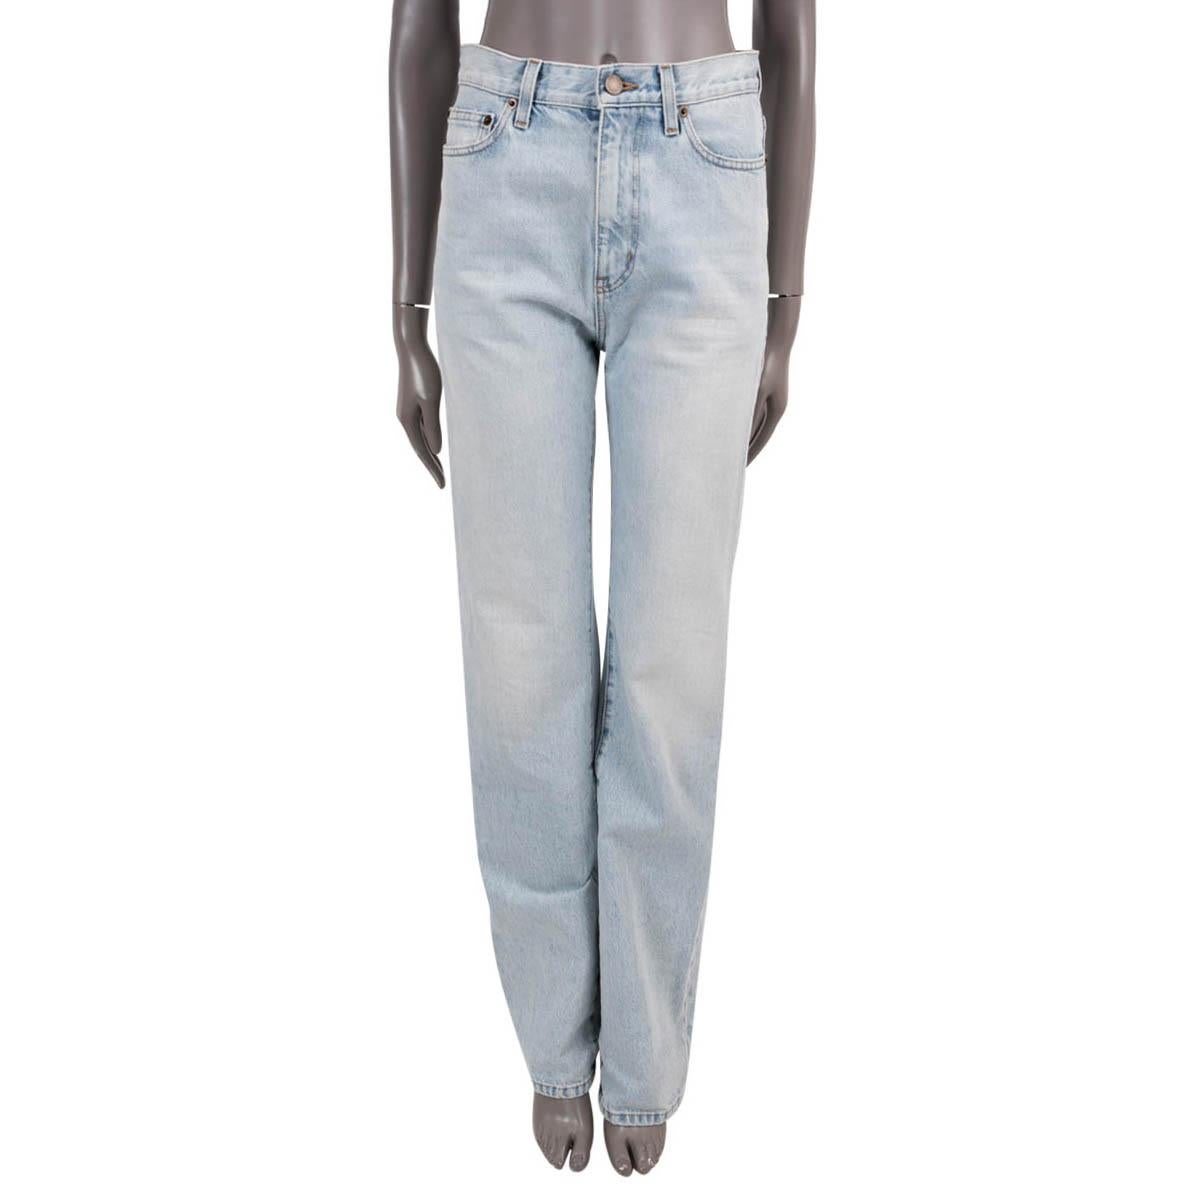 SAINT LAURENT Jeans bleu clair 2021 JANICE HIGH-RISE STRAIGHT Jeans Pantalon 26 XS